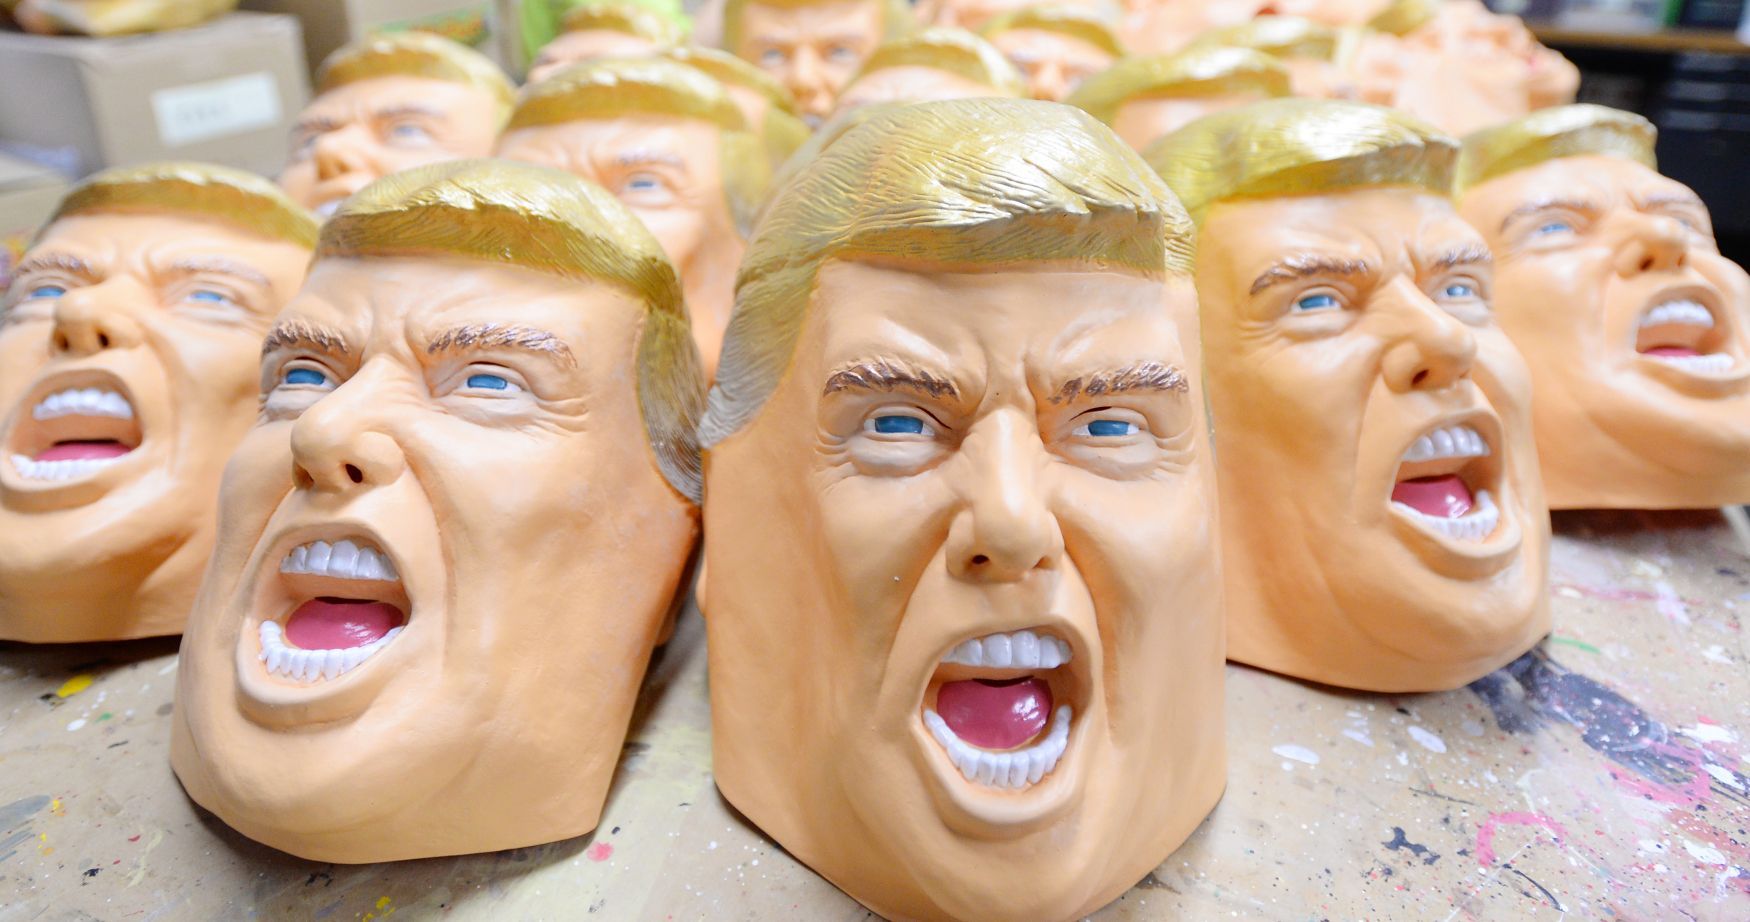 Donald Trump masky